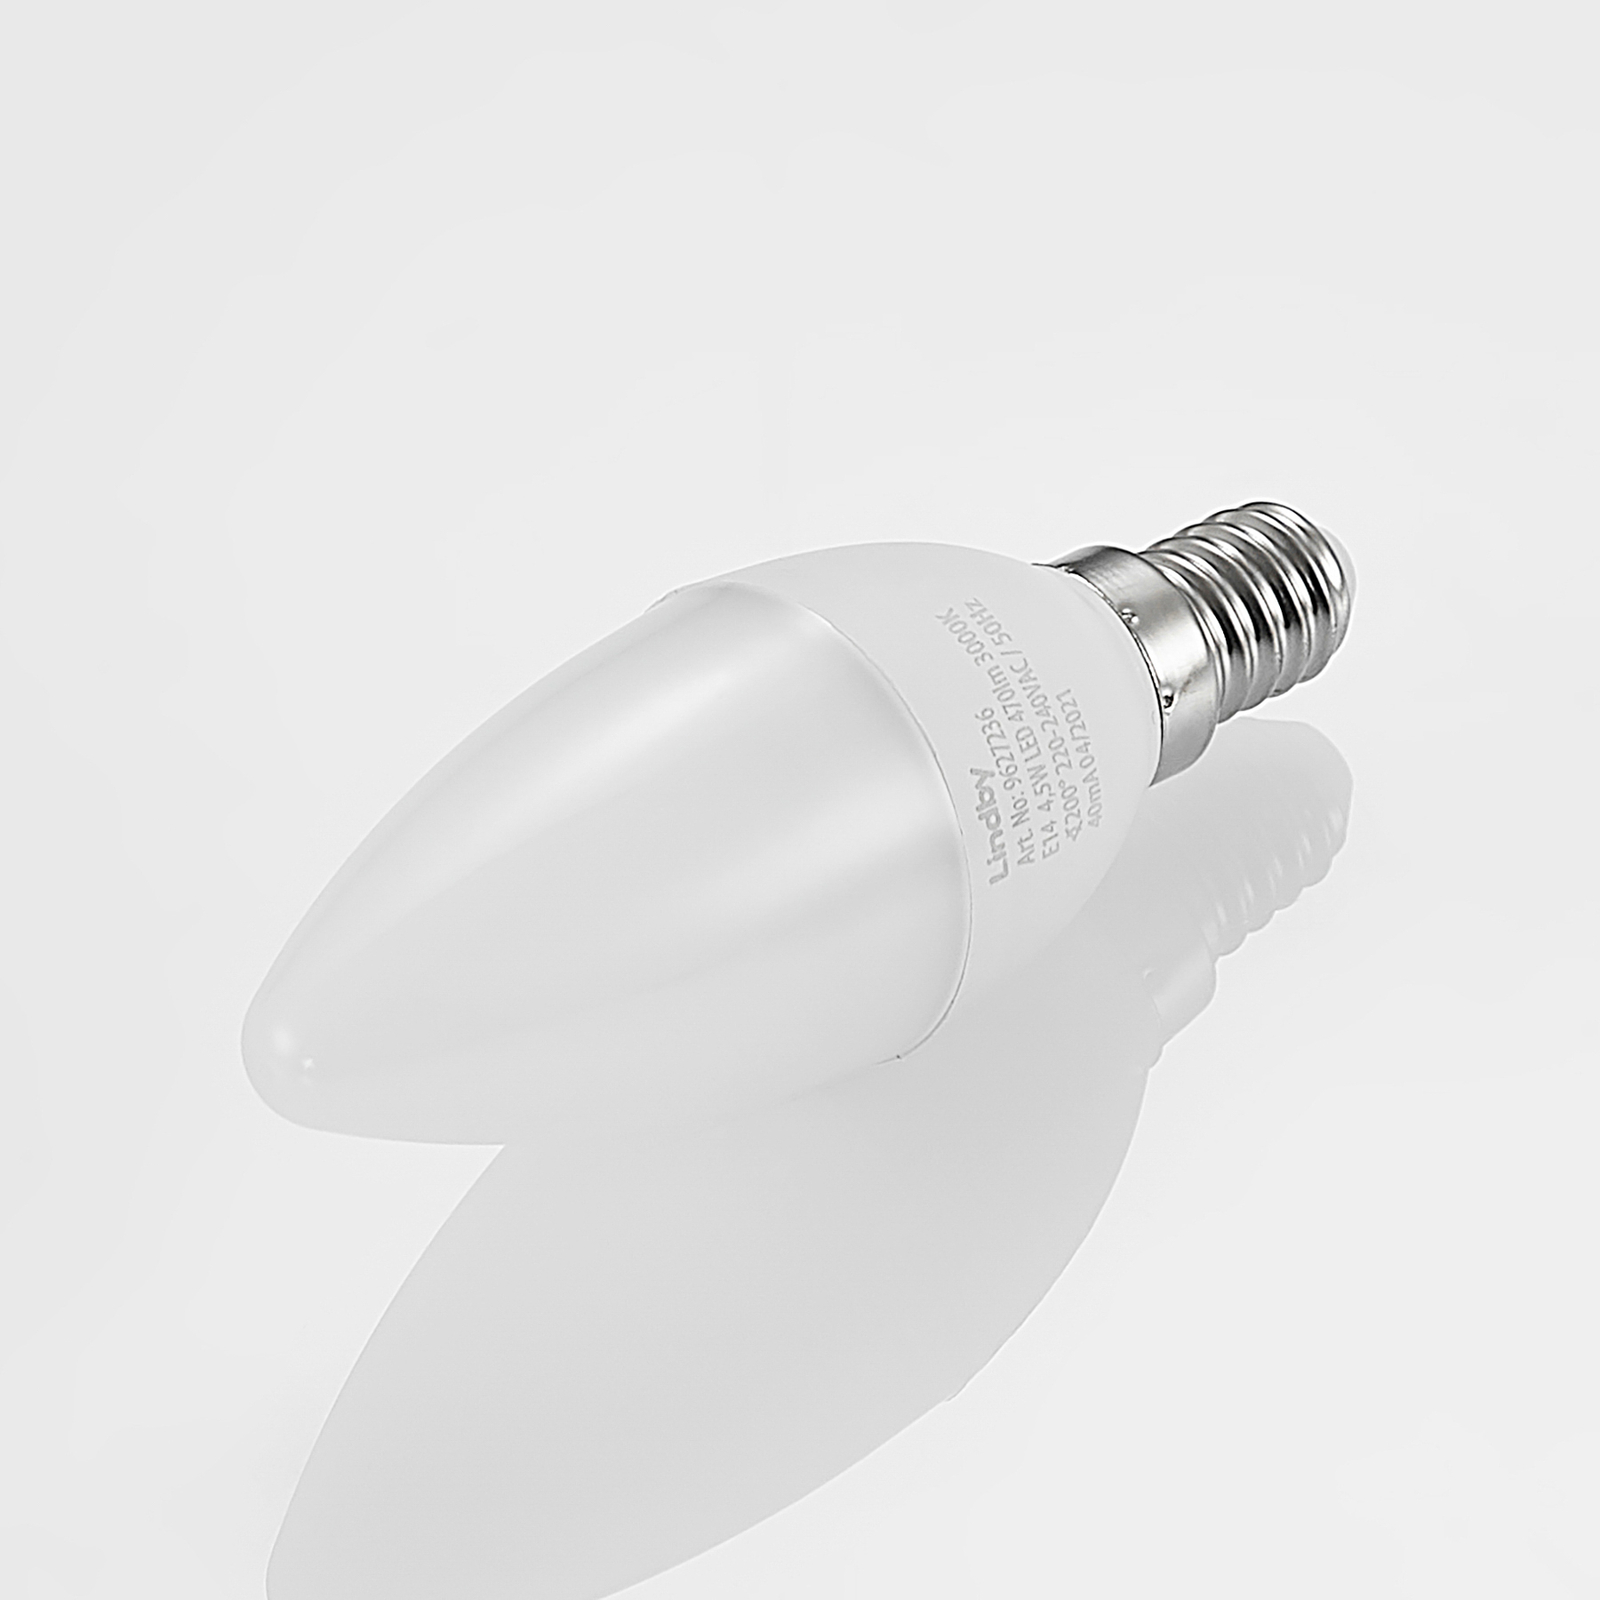 Lindby ampoule LED E14 C35 4,5 W 3 000 K opale x3